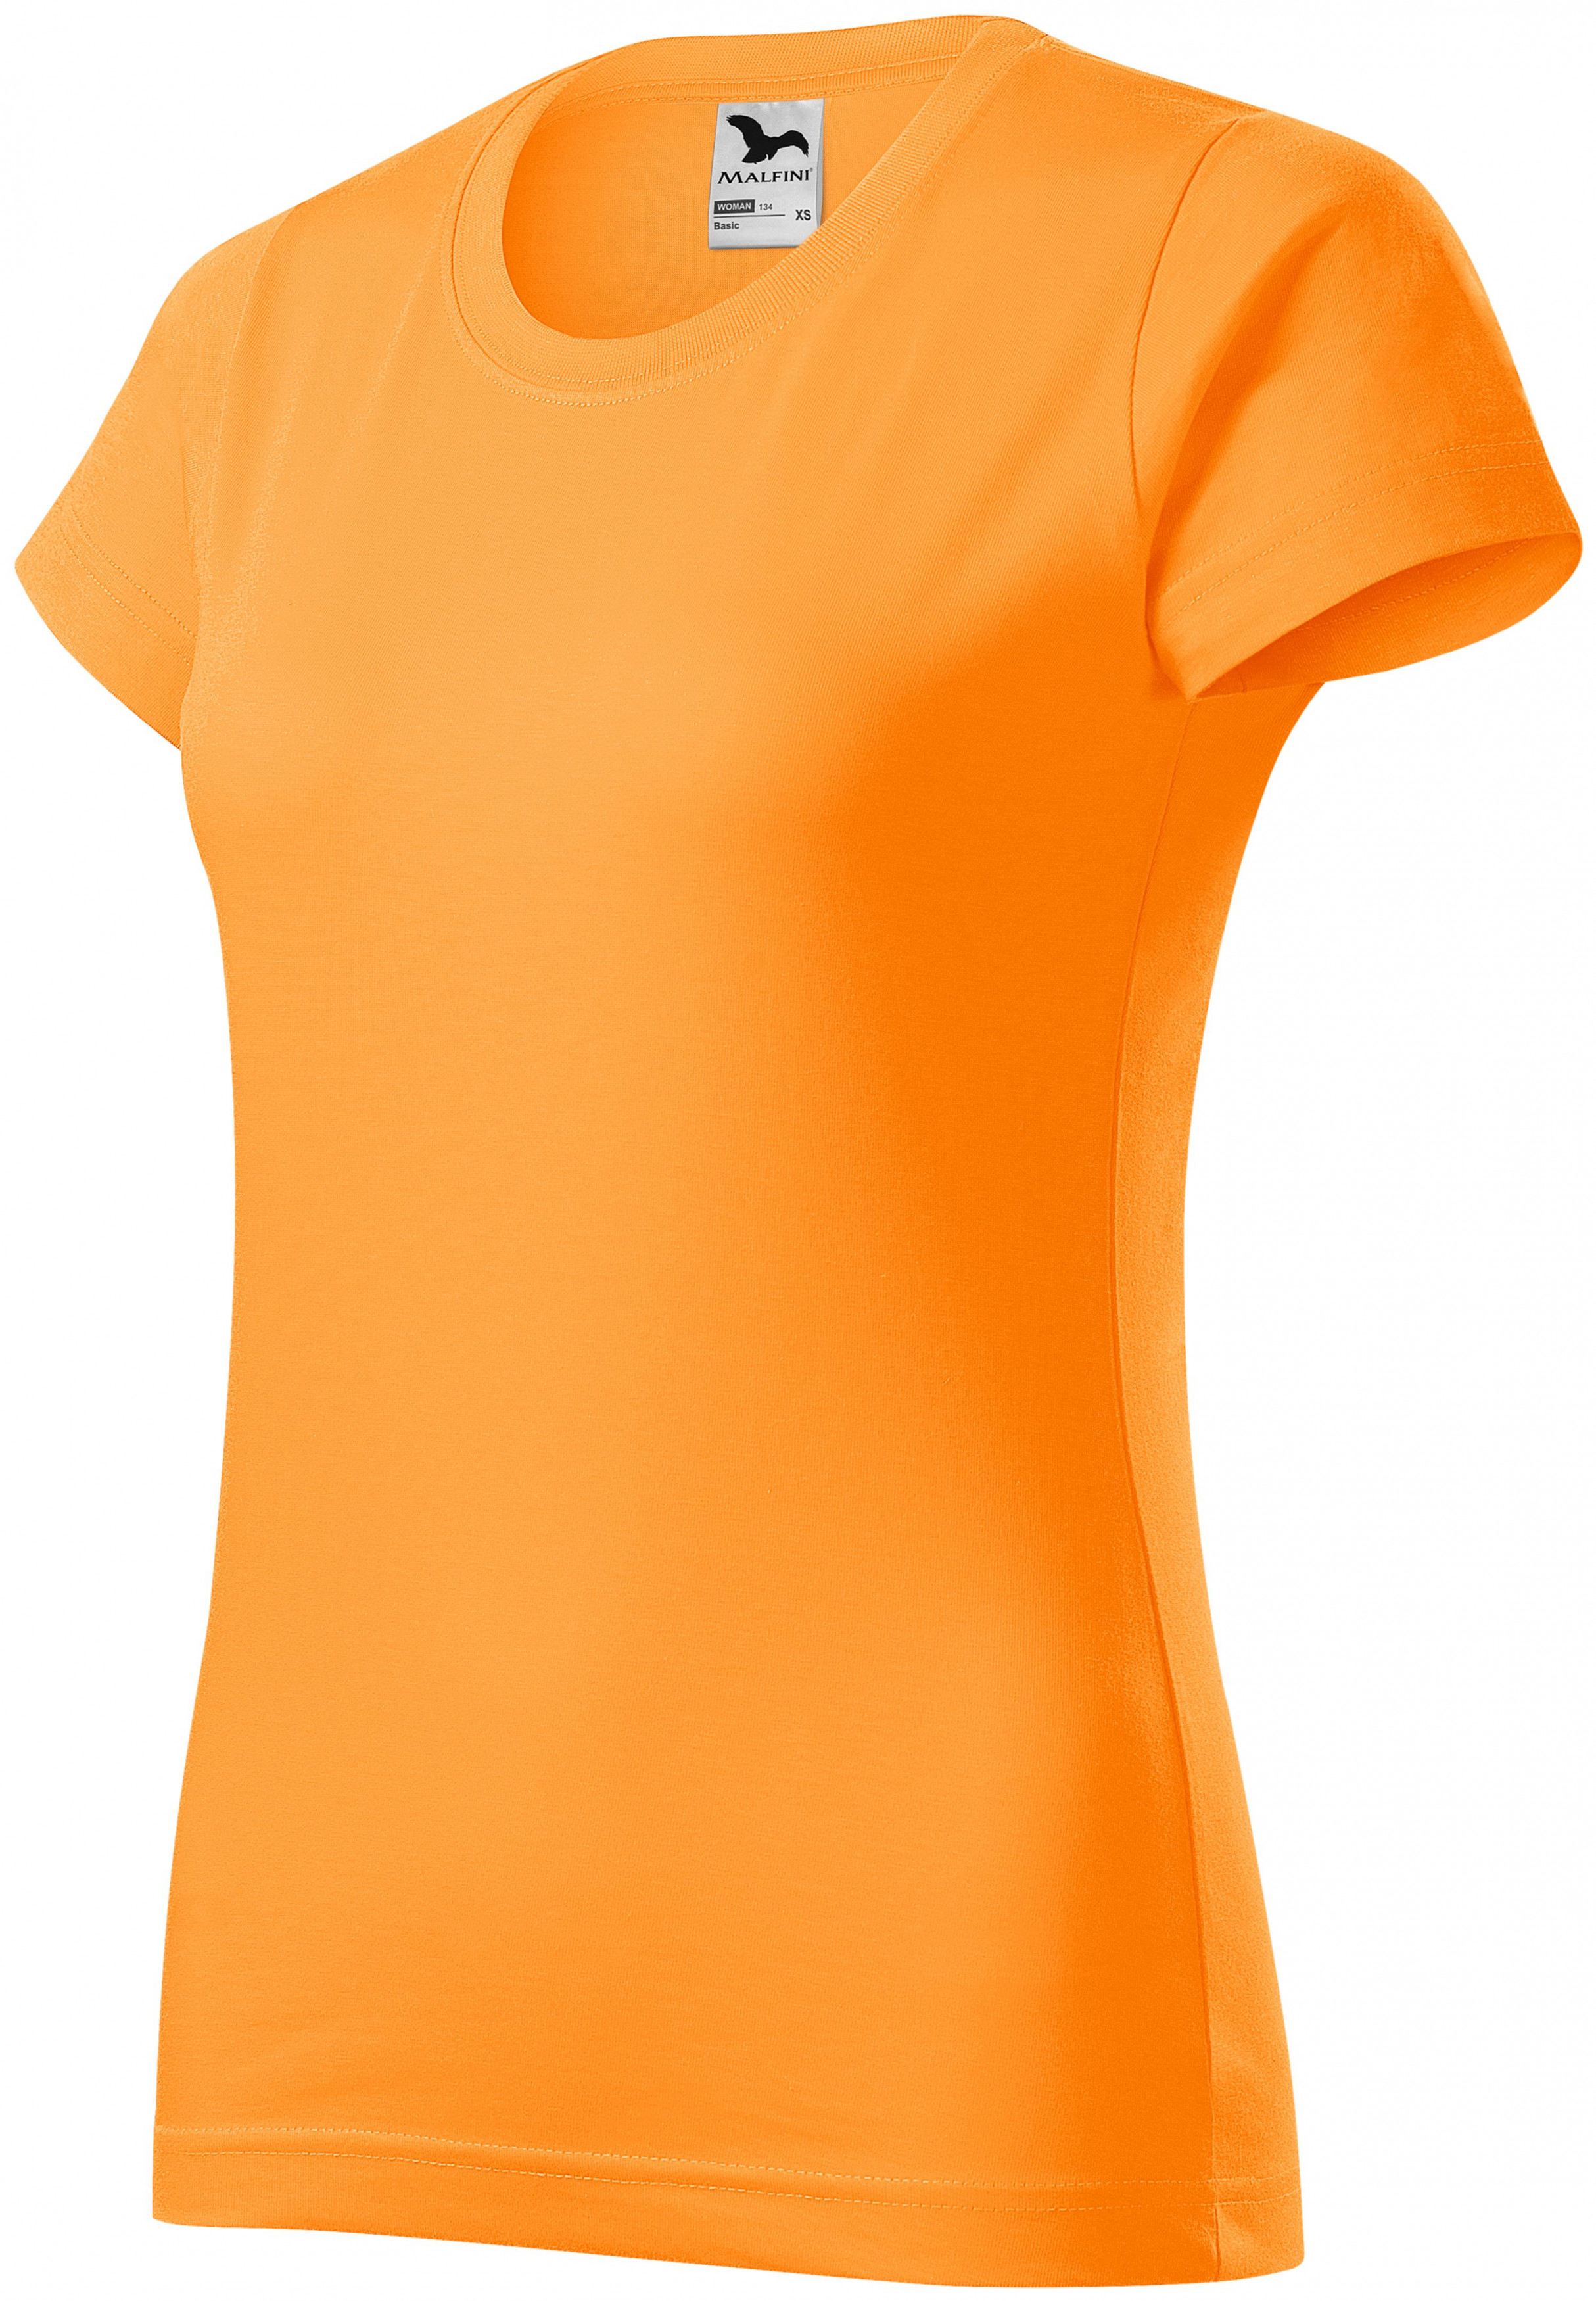 Dámske tričko jednoduché, mandarínková oranžová, XL